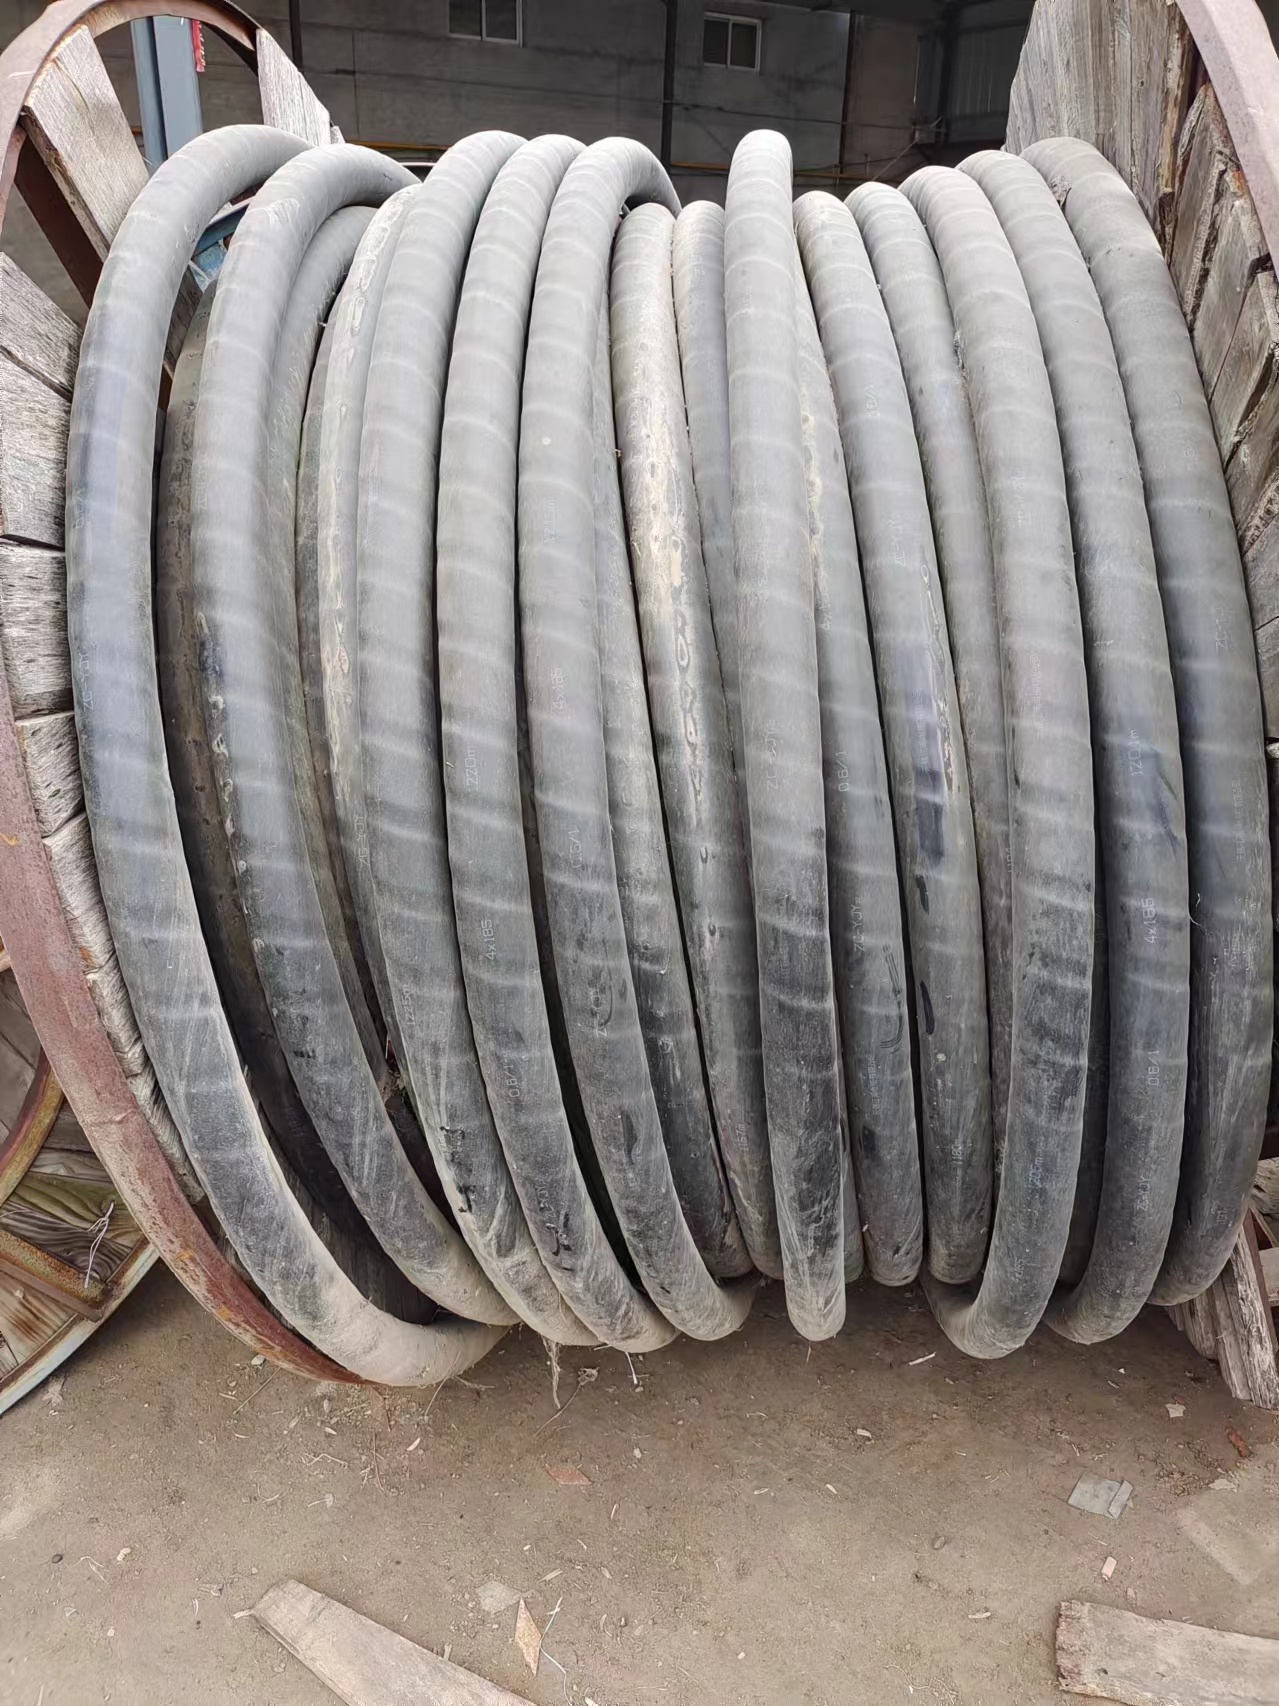 麟游工程剩余电缆回收  回收废旧电缆报价方式